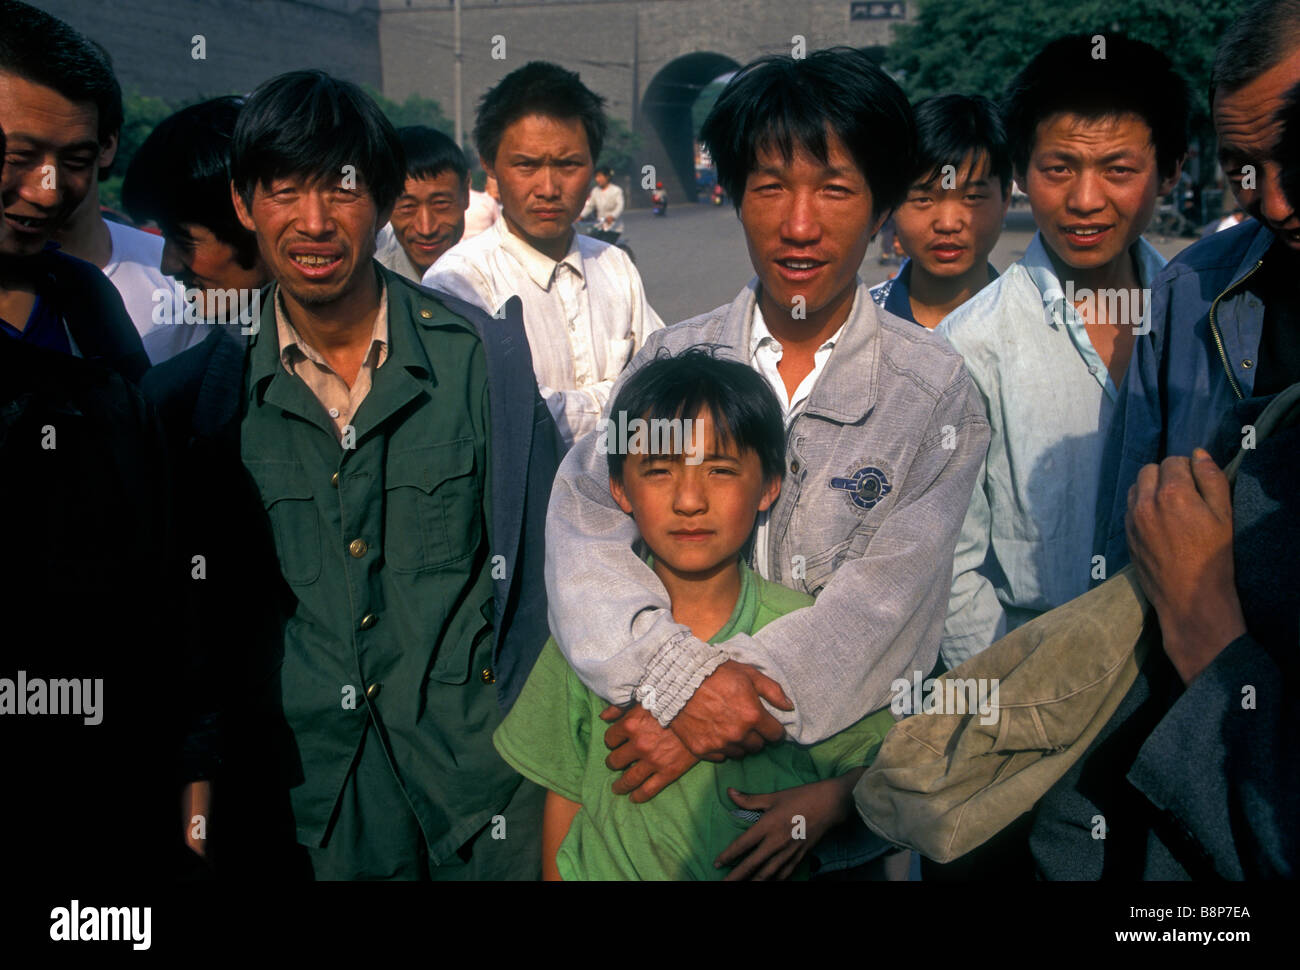 Menschen in China, Chinesisch, chinesische Männer, Männer, Männer, Tagelöhner, Tag Arbeitnehmern, Arbeitslosen, Xian, Provinz Shaanxi, China Stockfoto